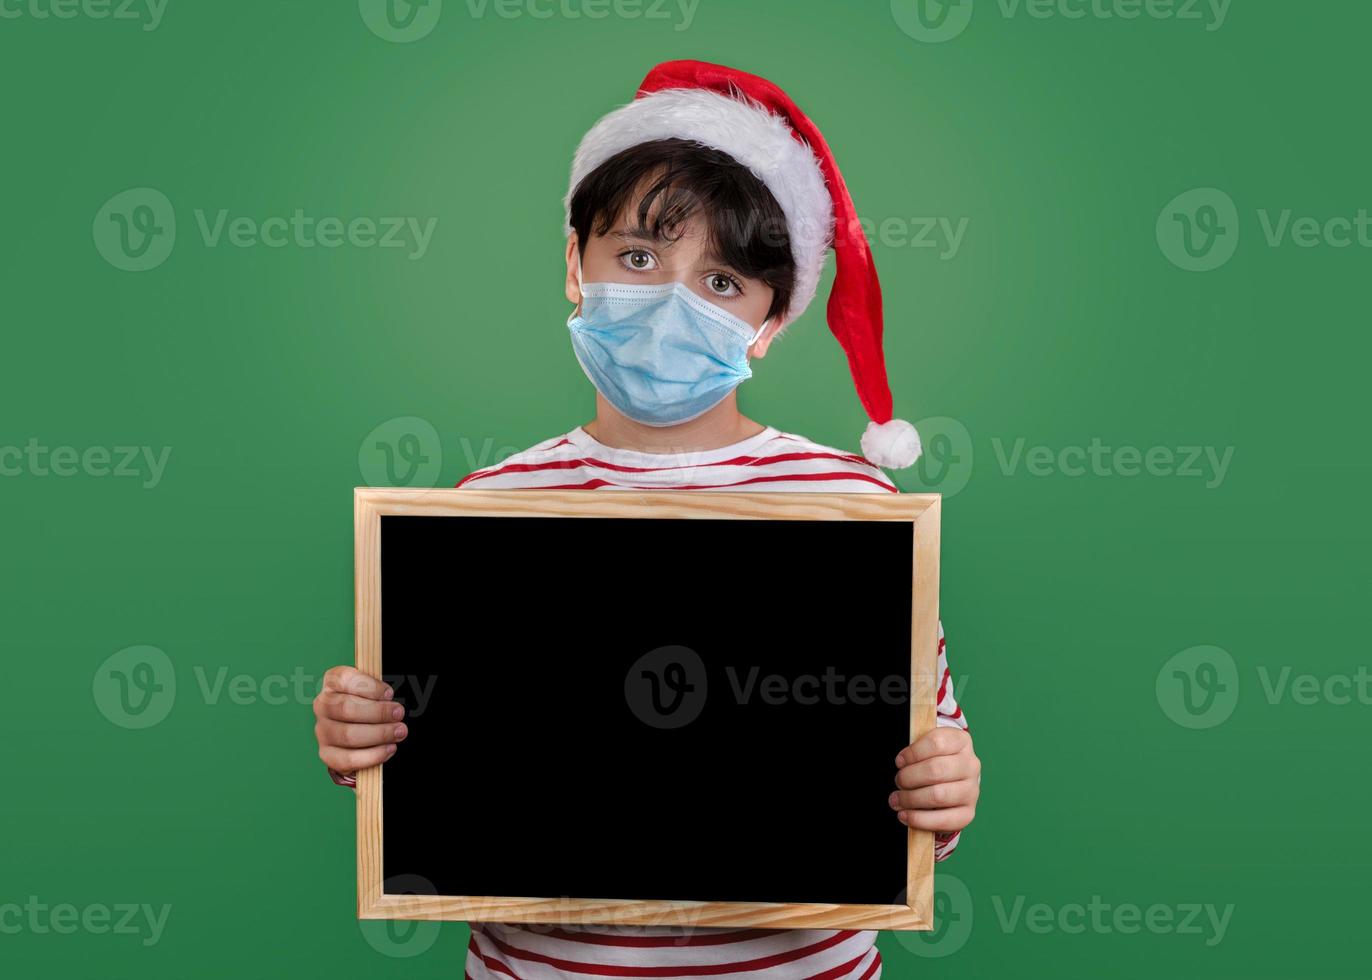 feliz natal, garoto engraçado com máscara médica segurando um quadro-negro foto